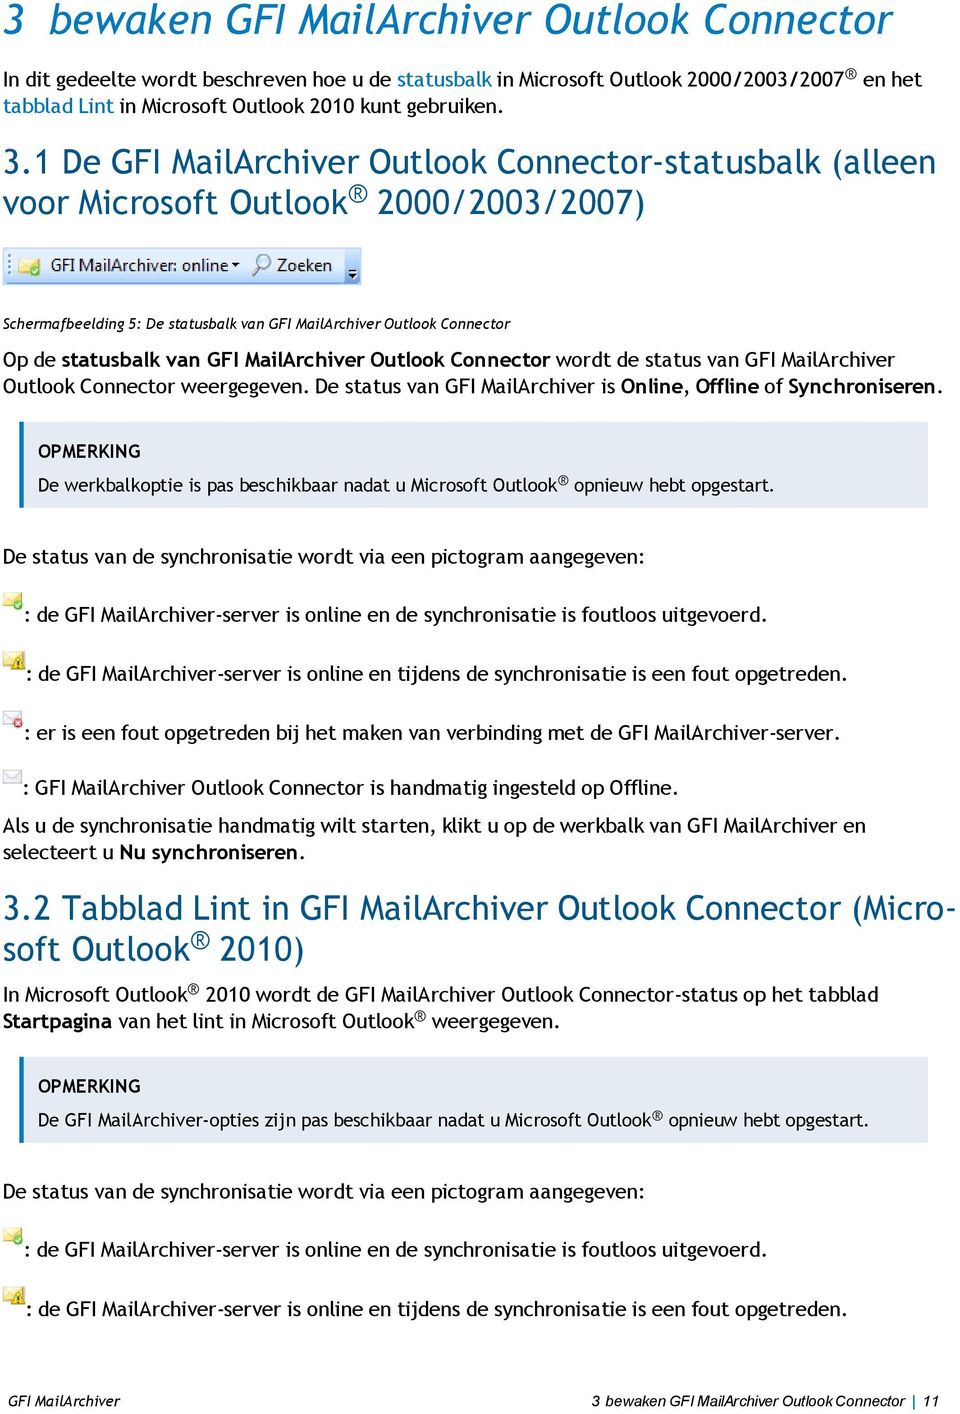 MailArchiver Outlook Connector wordt de status van GFI MailArchiver Outlook Connector weergegeven. De status van GFI MailArchiver is Online, Offline of Synchroniseren.